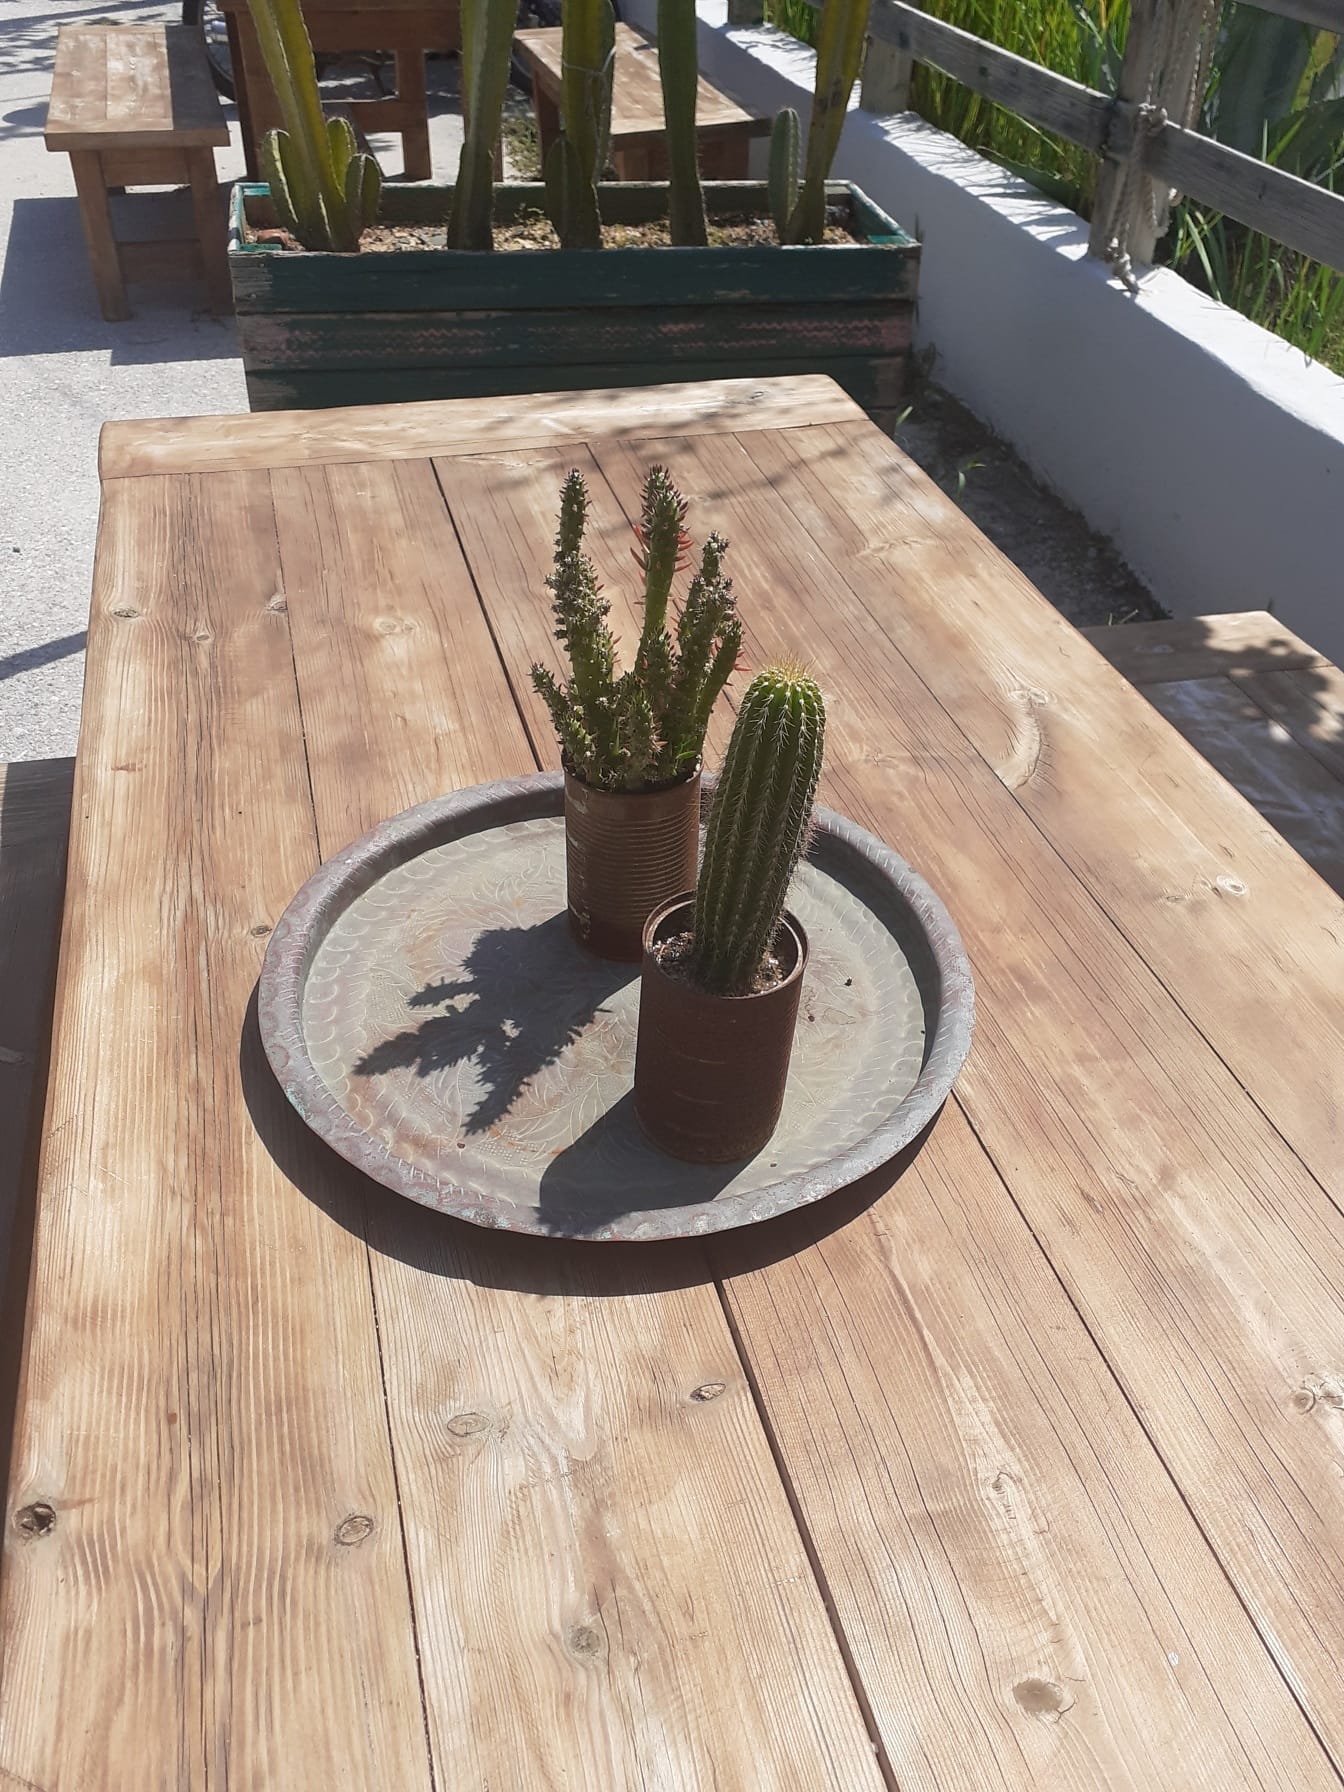 Cactusplanten op houten bureau in de bloempot van het roesttin blik